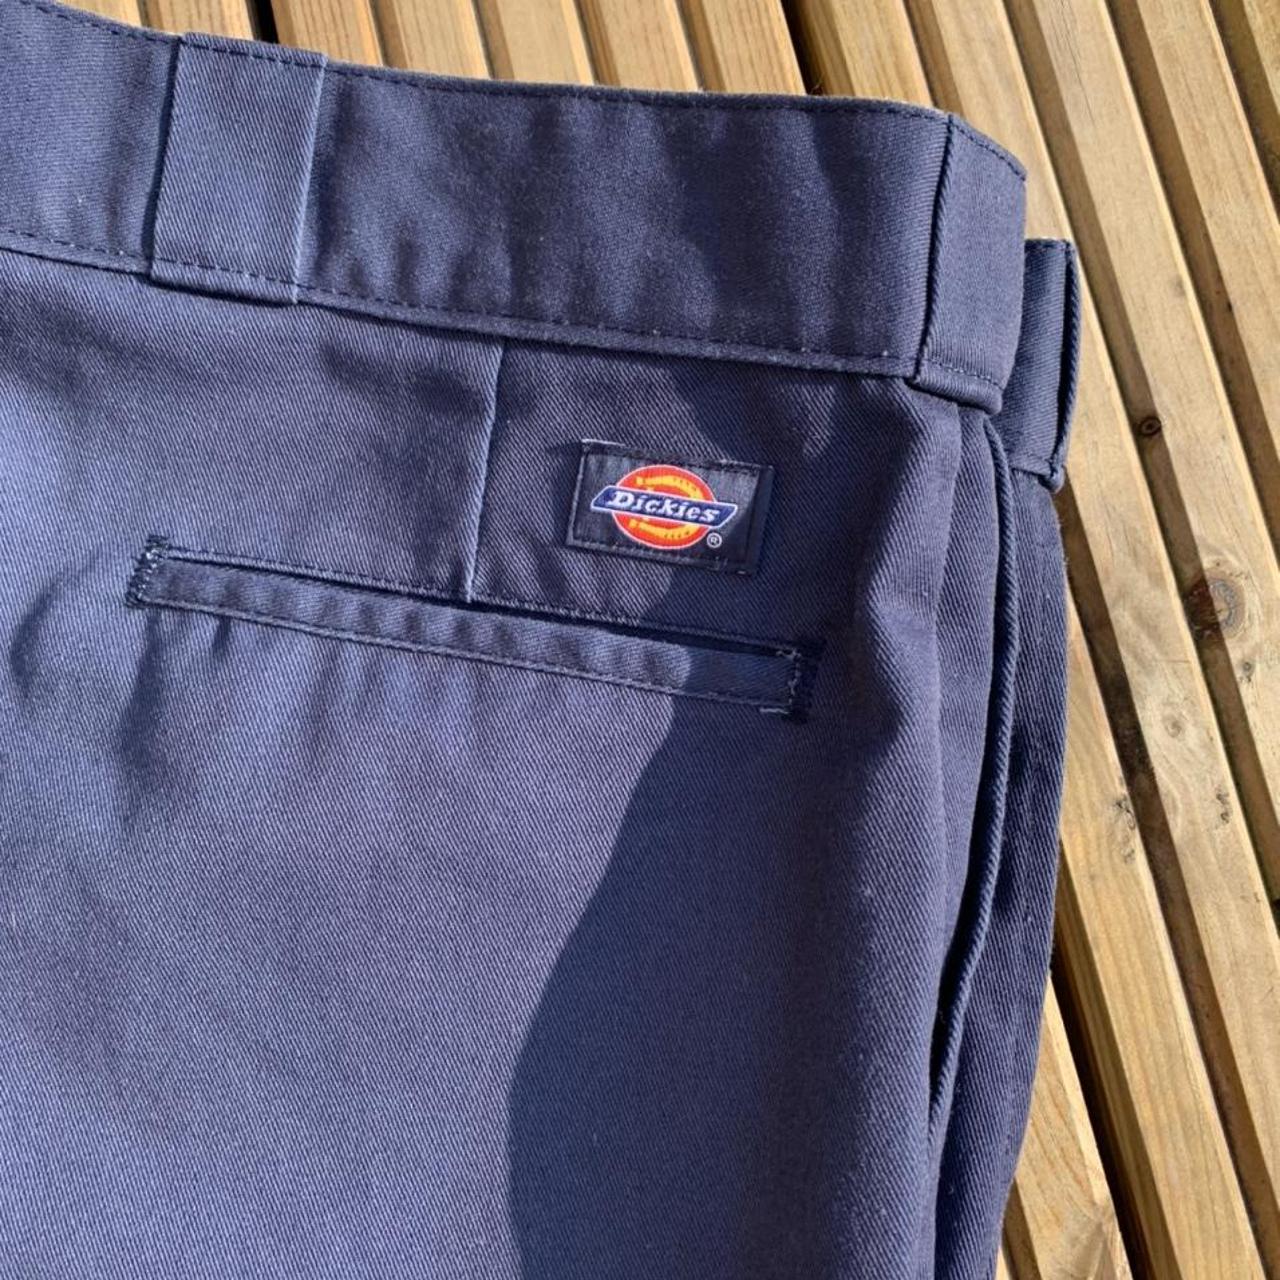 Navy Blue Dickies 874 Original Fit Workwear Trousers... - Depop